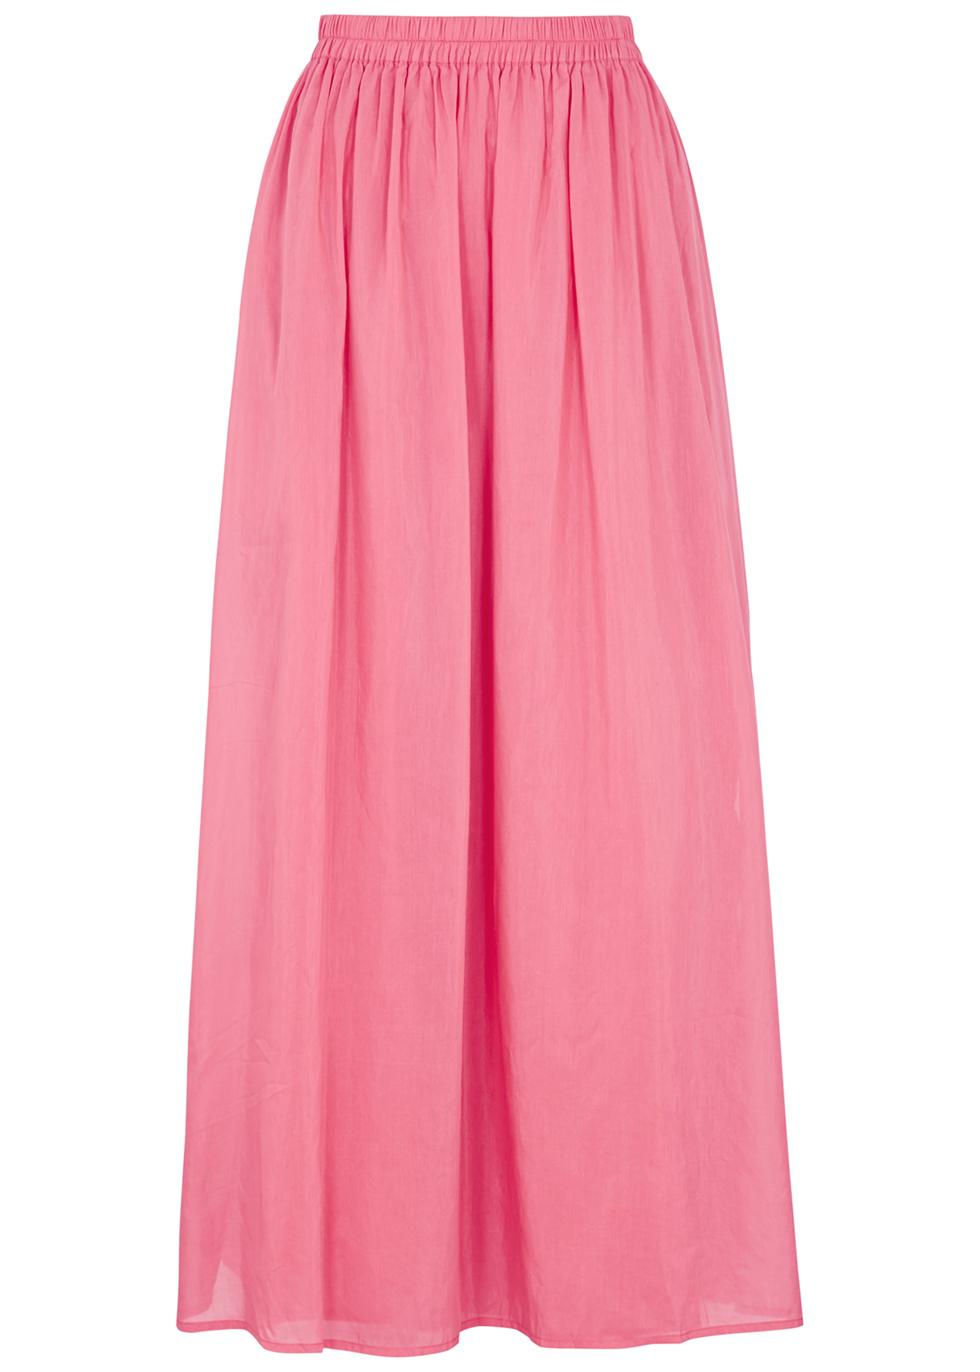 Ocean pink cotton-blend maxi skirt by BIRD&KNOLL